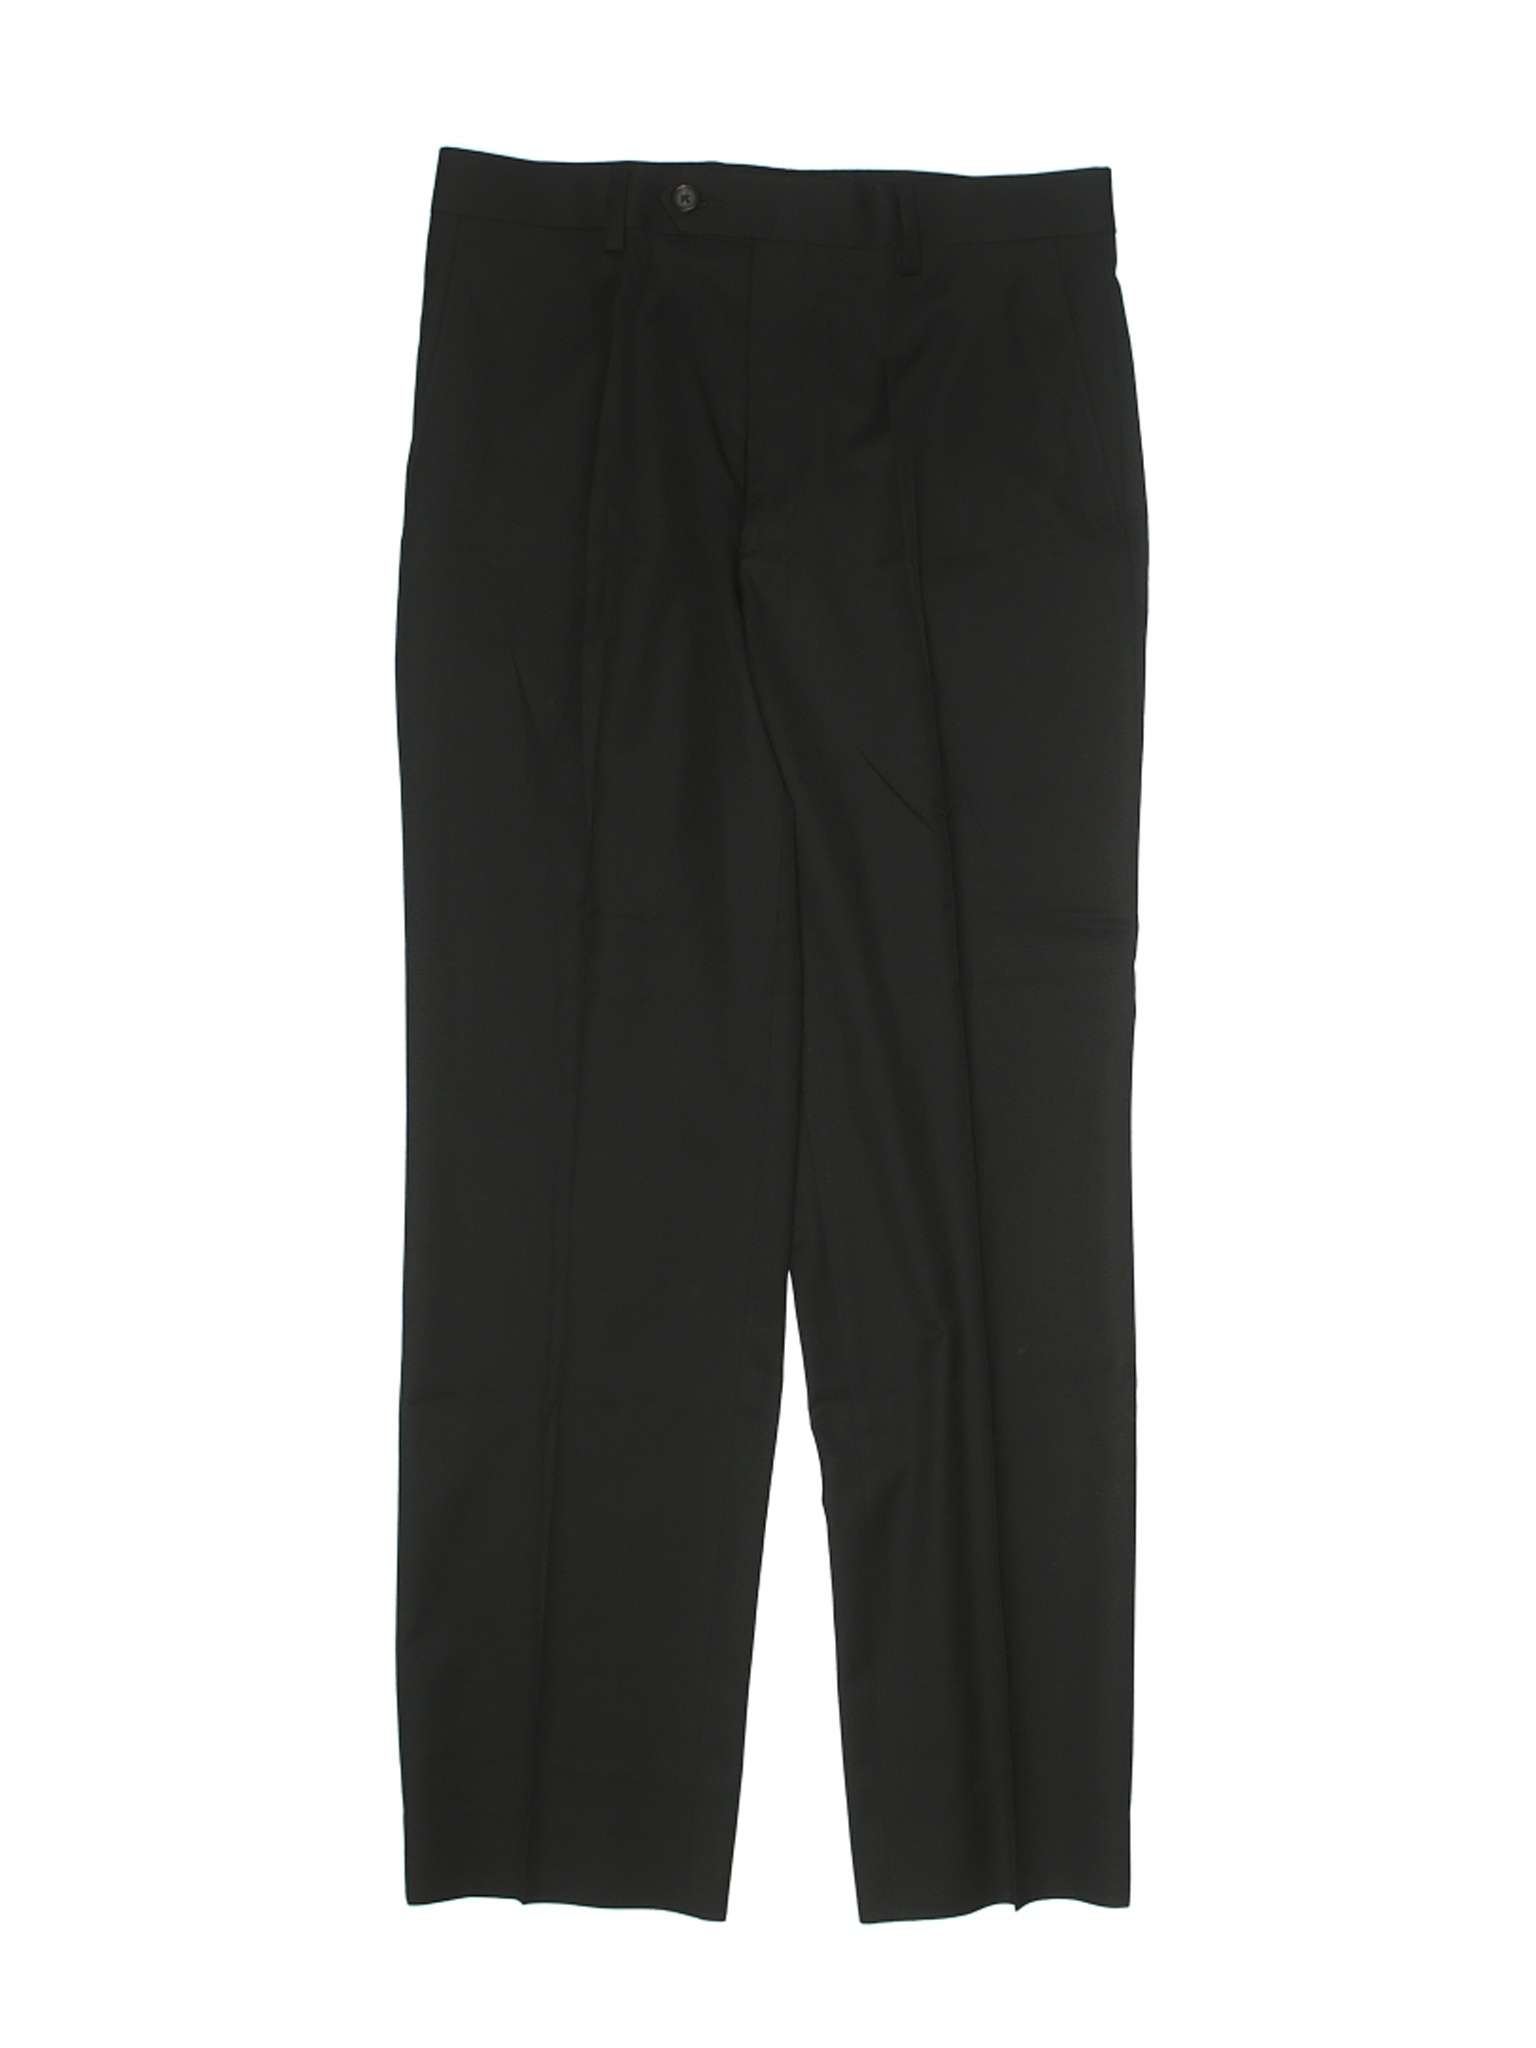 Lauren by Ralph Lauren Boys Black Dress Pants 12 Husky | eBay